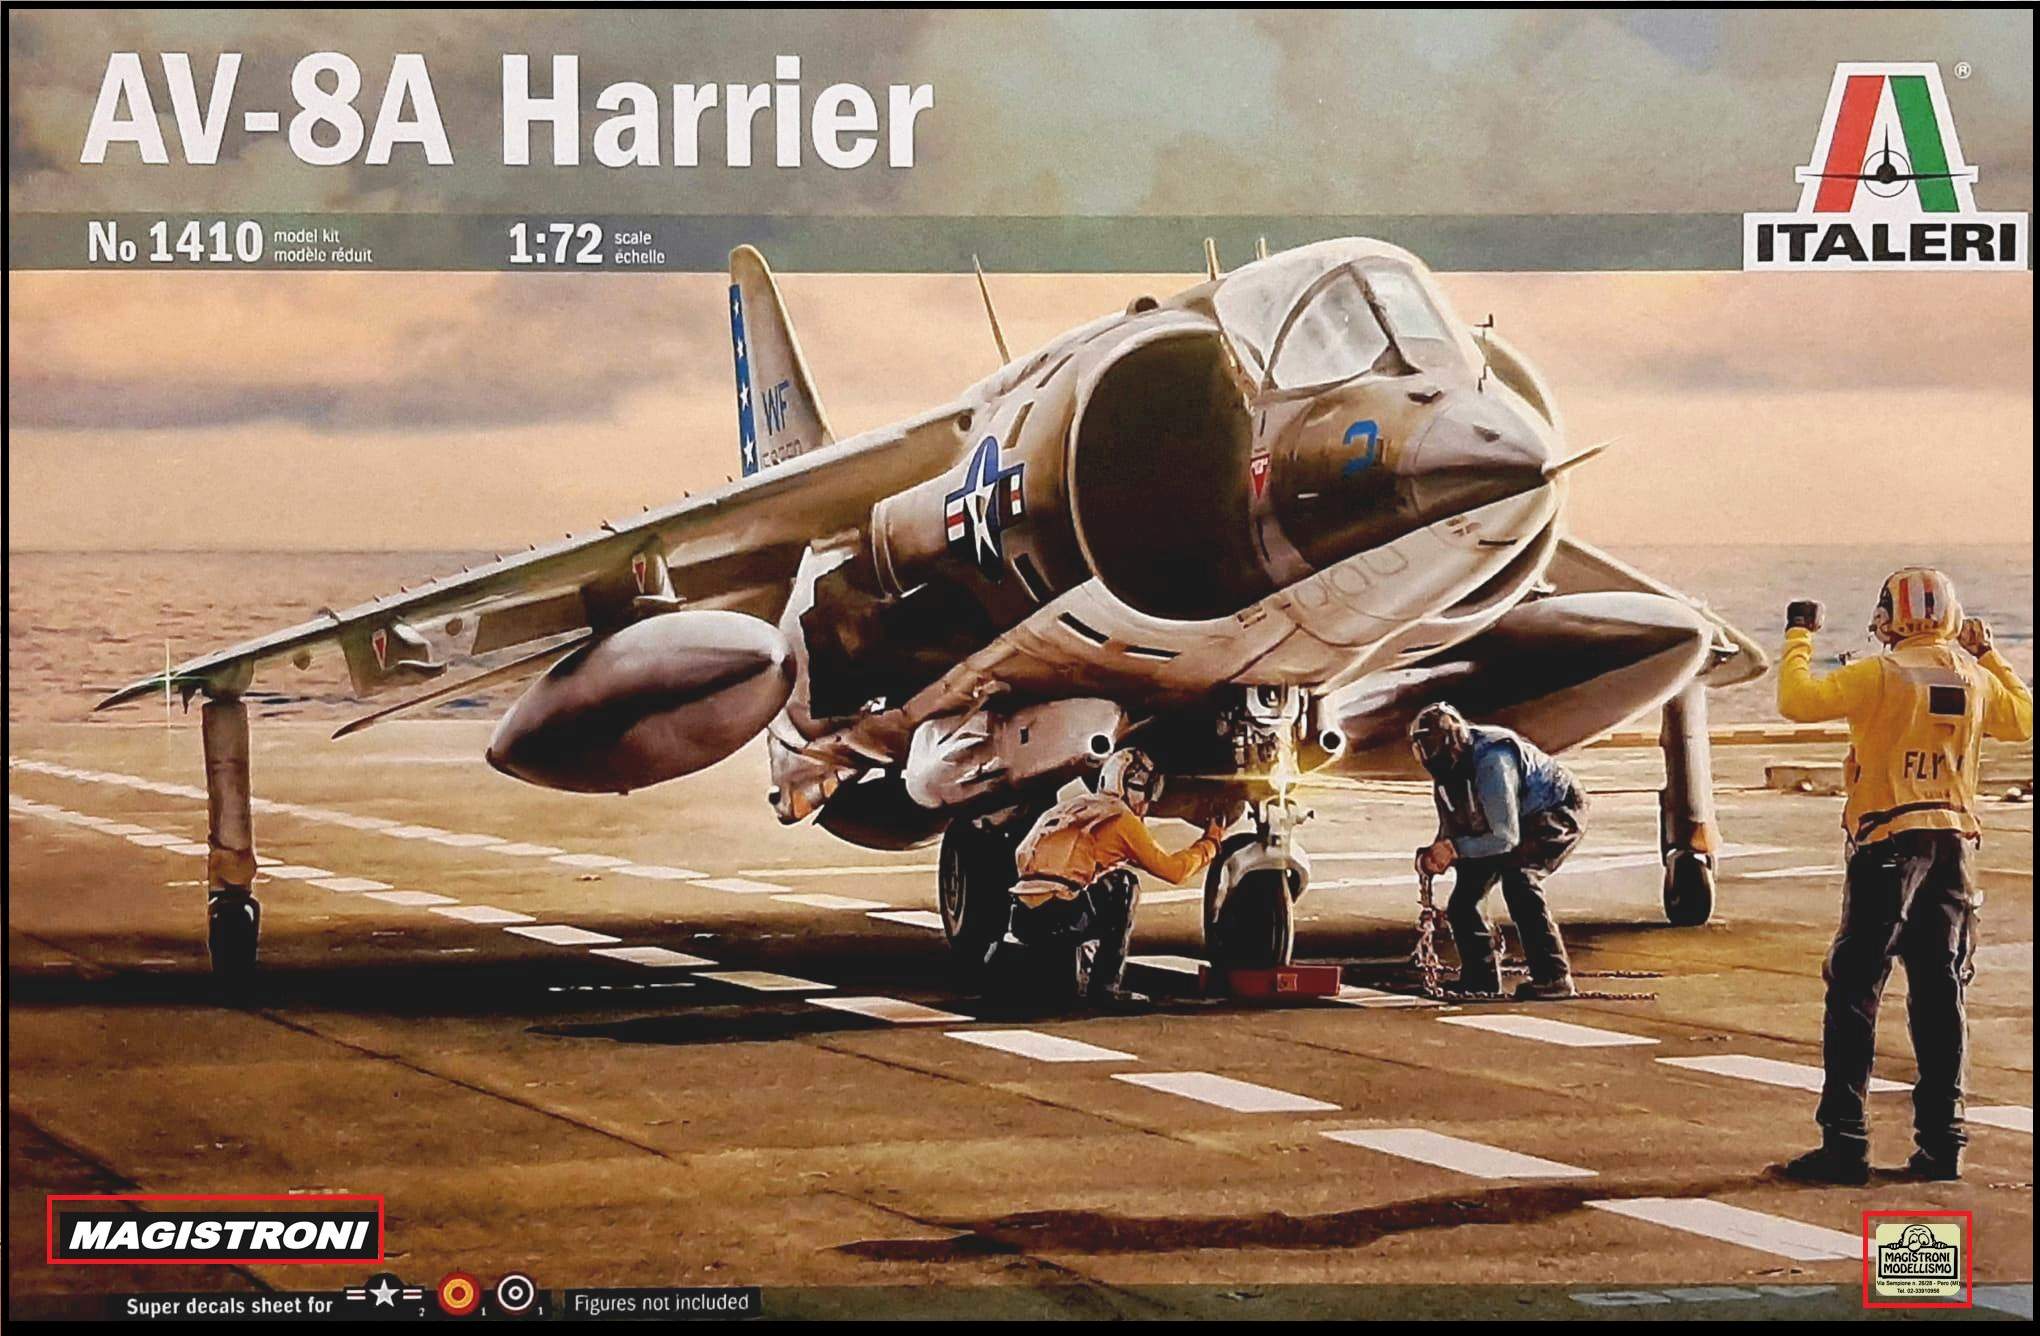 AV-8A HARRIER